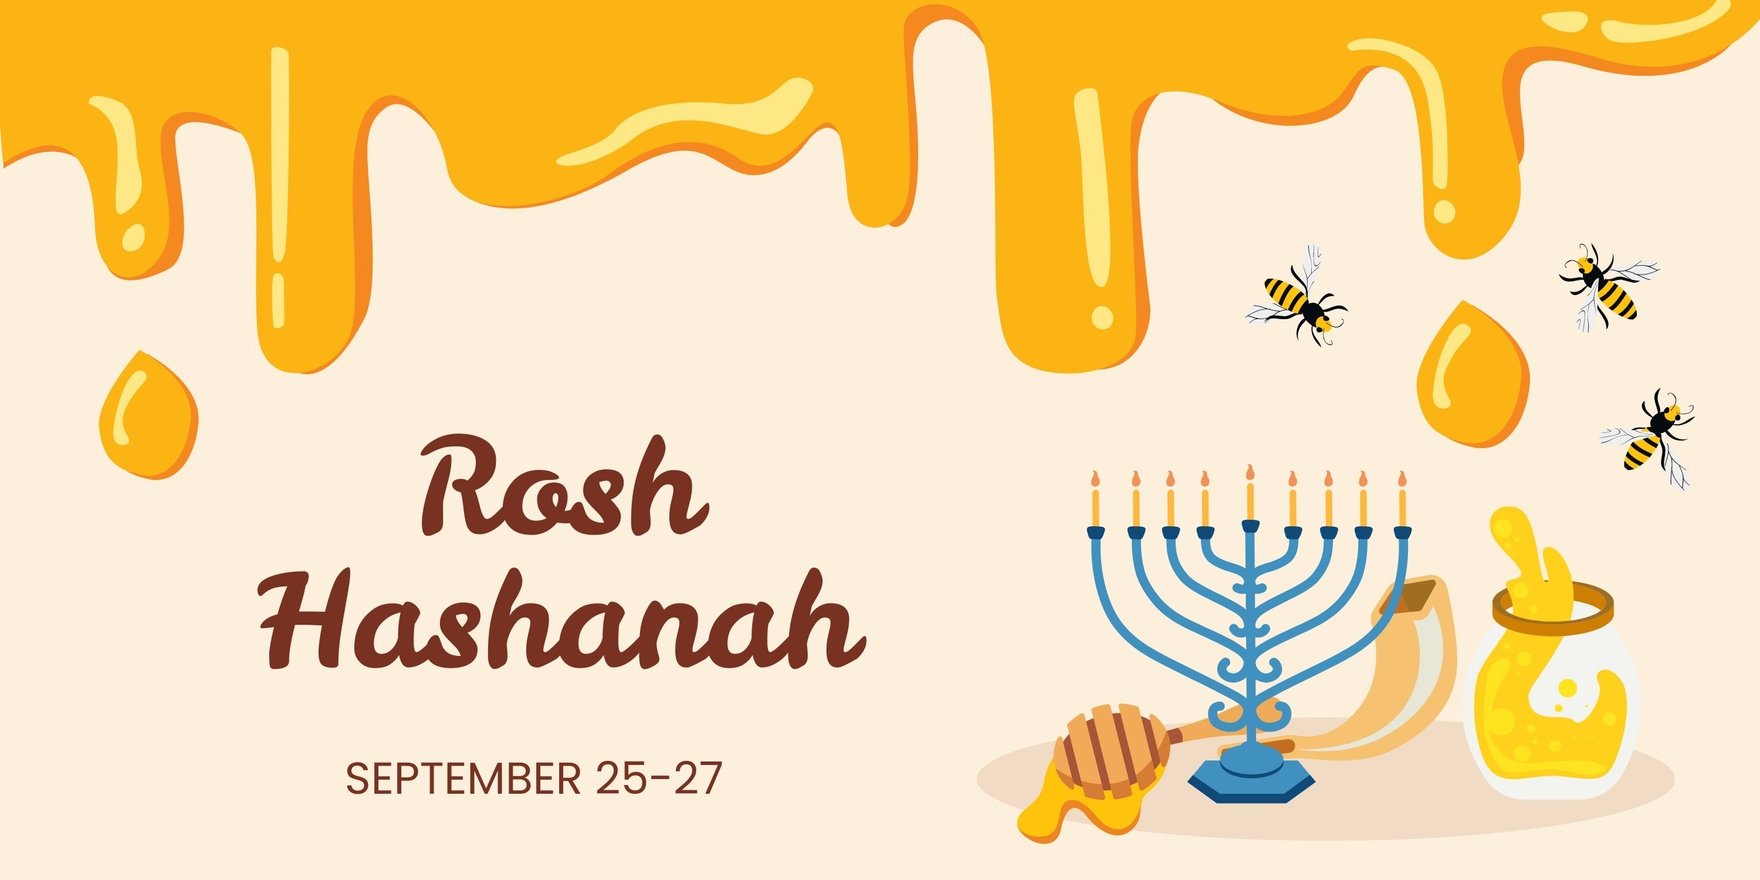 Rosh Hashanah Banner in Illustrator, PSD, EPS, SVG, JPG, PNG